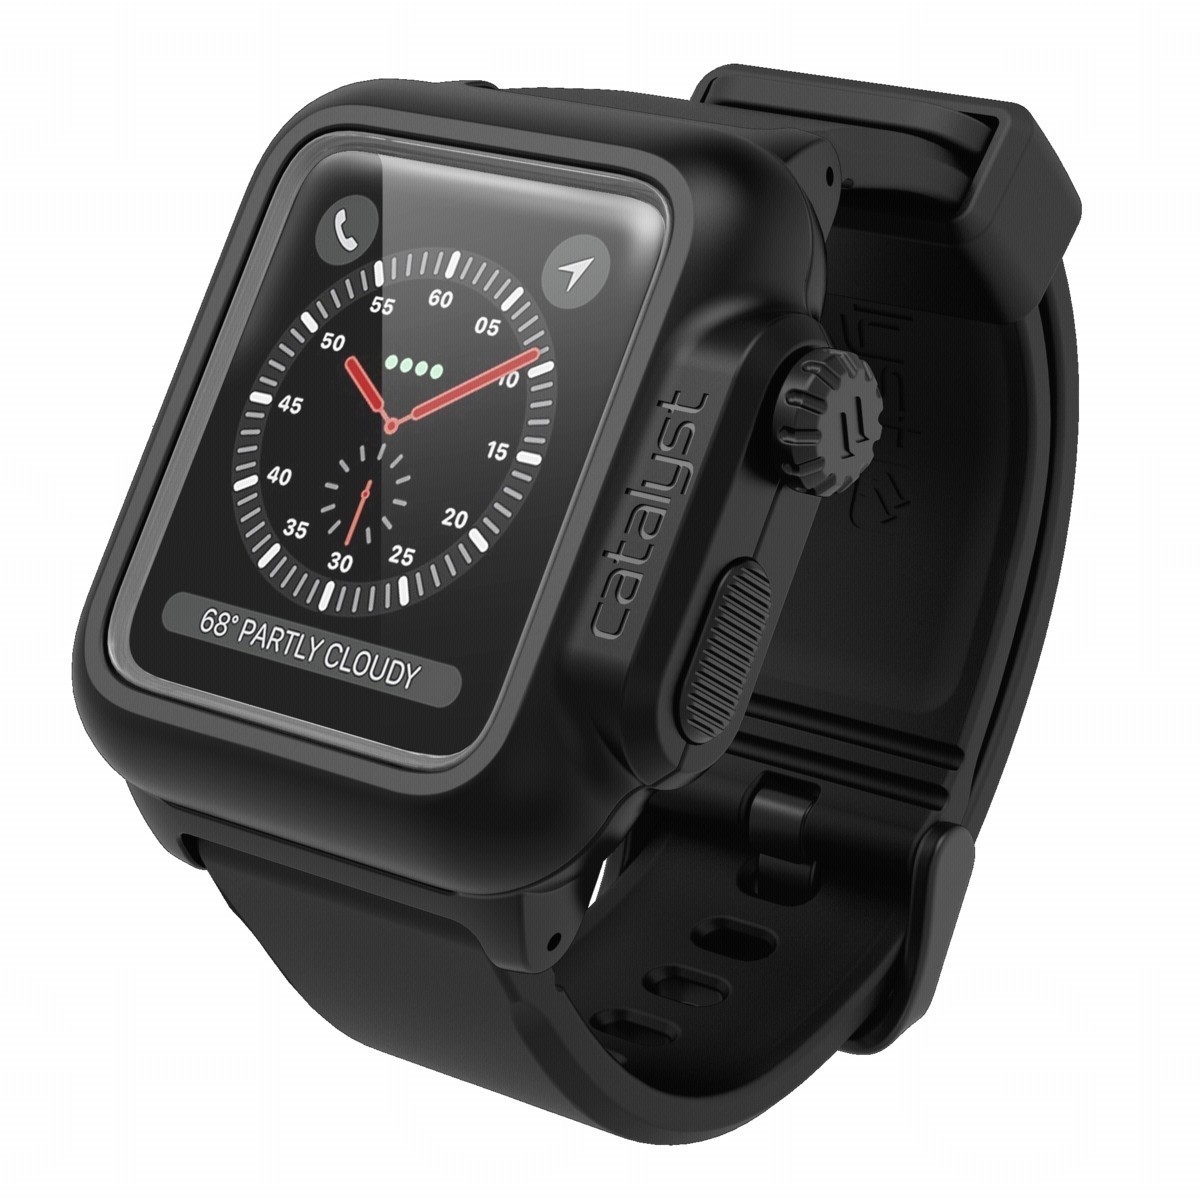 Catalyst waterproof Apple Watch 2/3 38mm case black